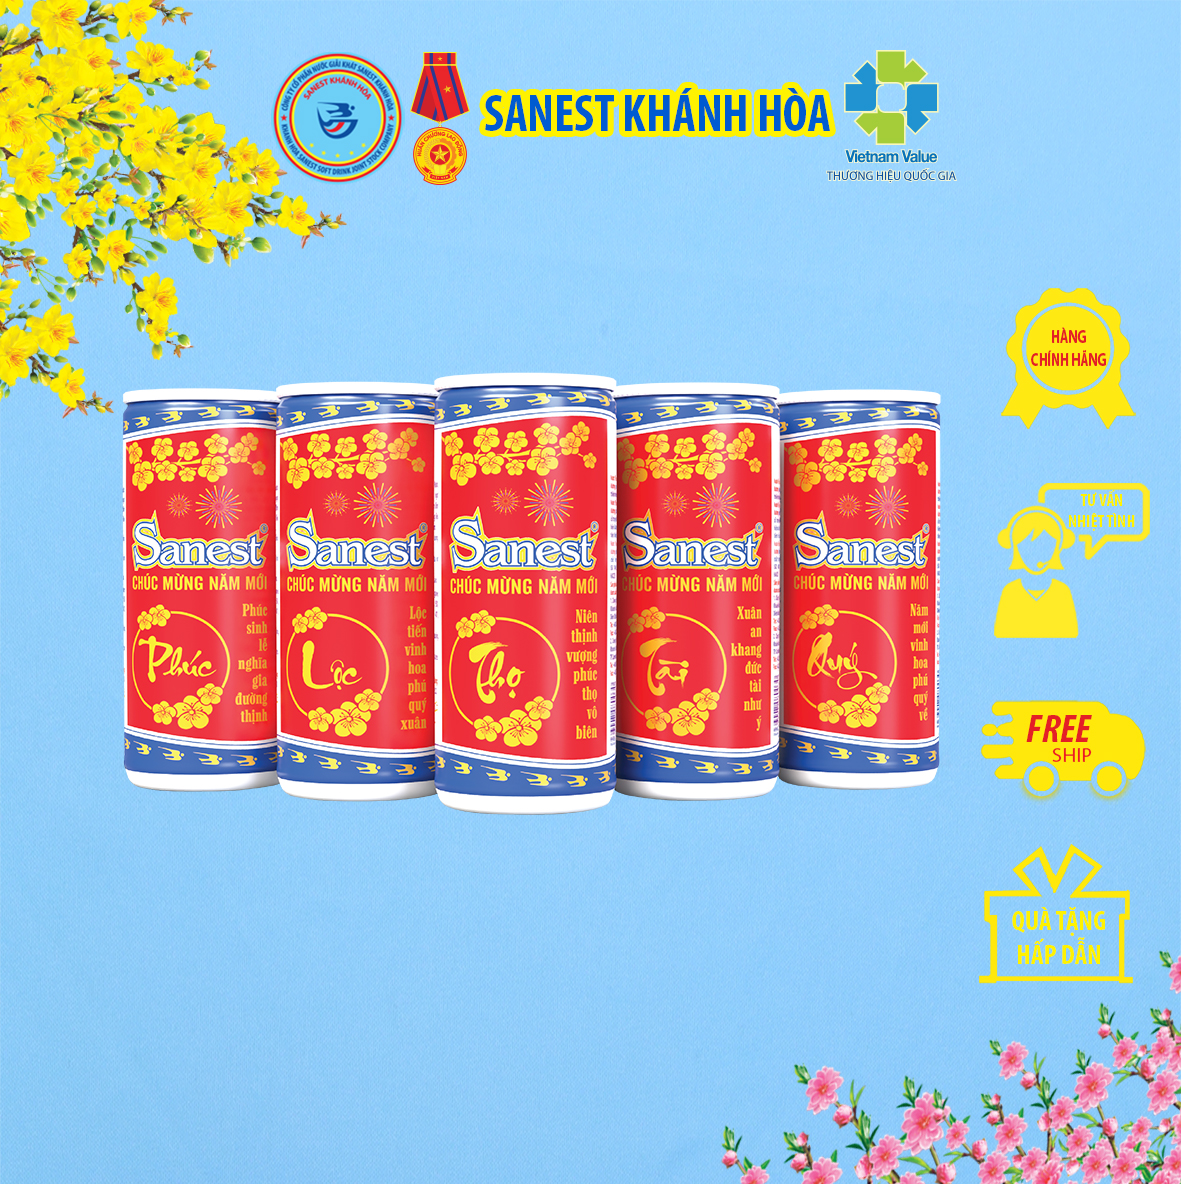 Thùng 30 lon Nước Yến sào Khánh Hòa Sanest đóng lon 190ml - Sản phẩm sử dụng đường dành cho người ăn kiêng